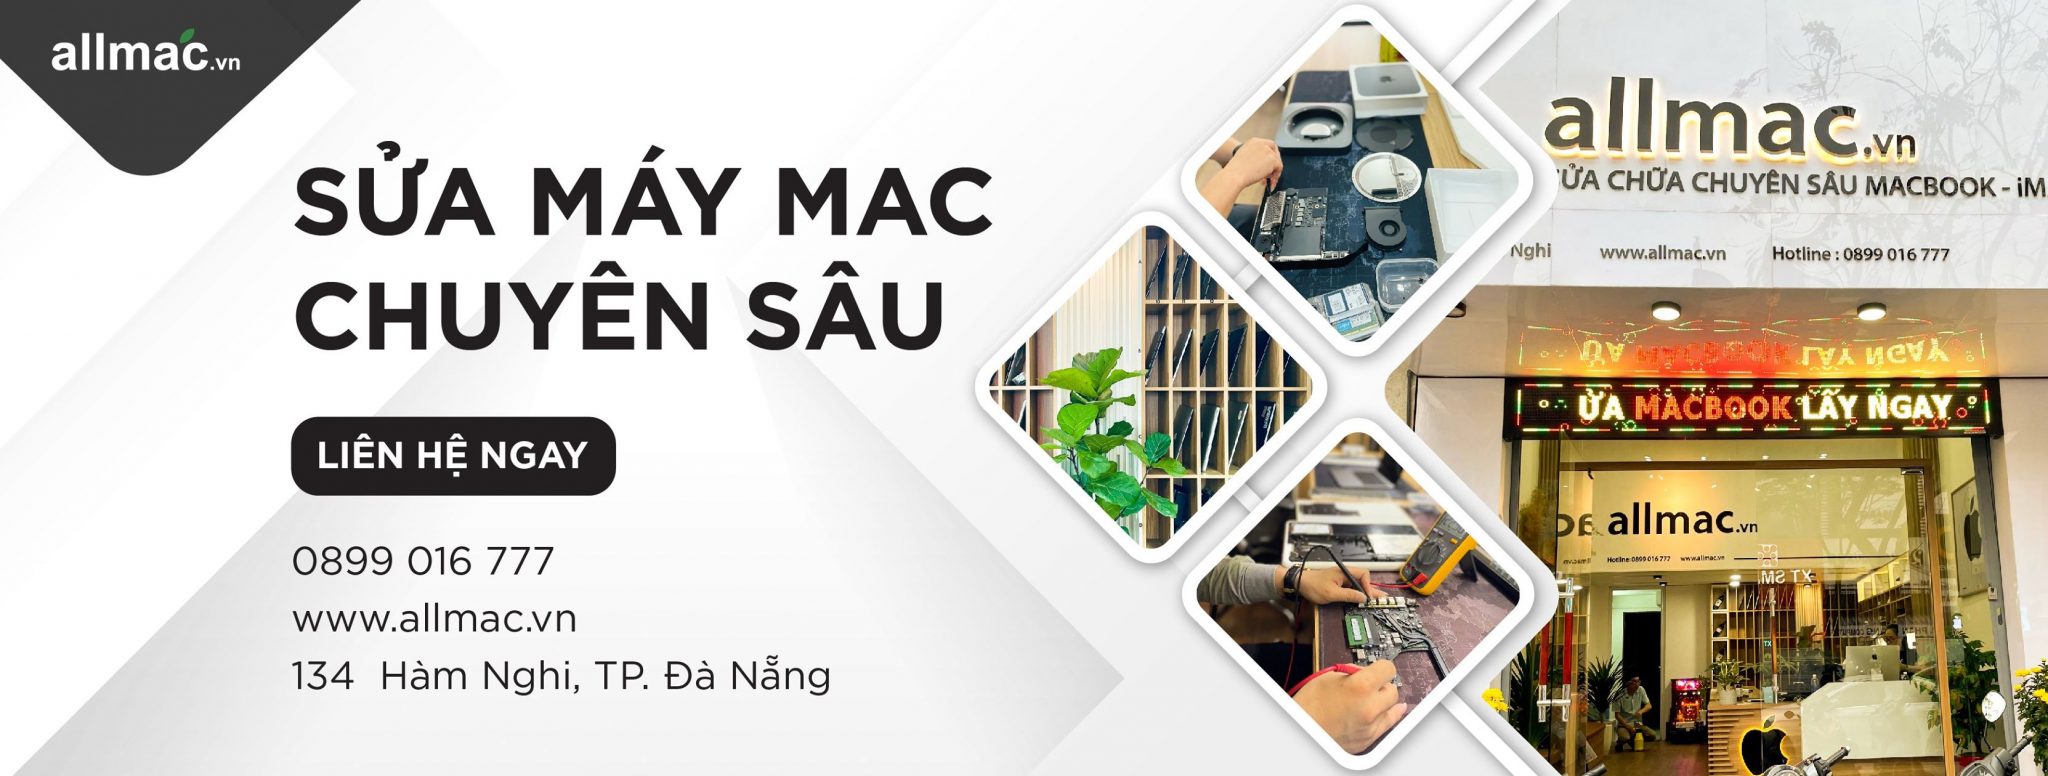 Allmac trung tâm sửa chữa Macbook Đà Nẵng